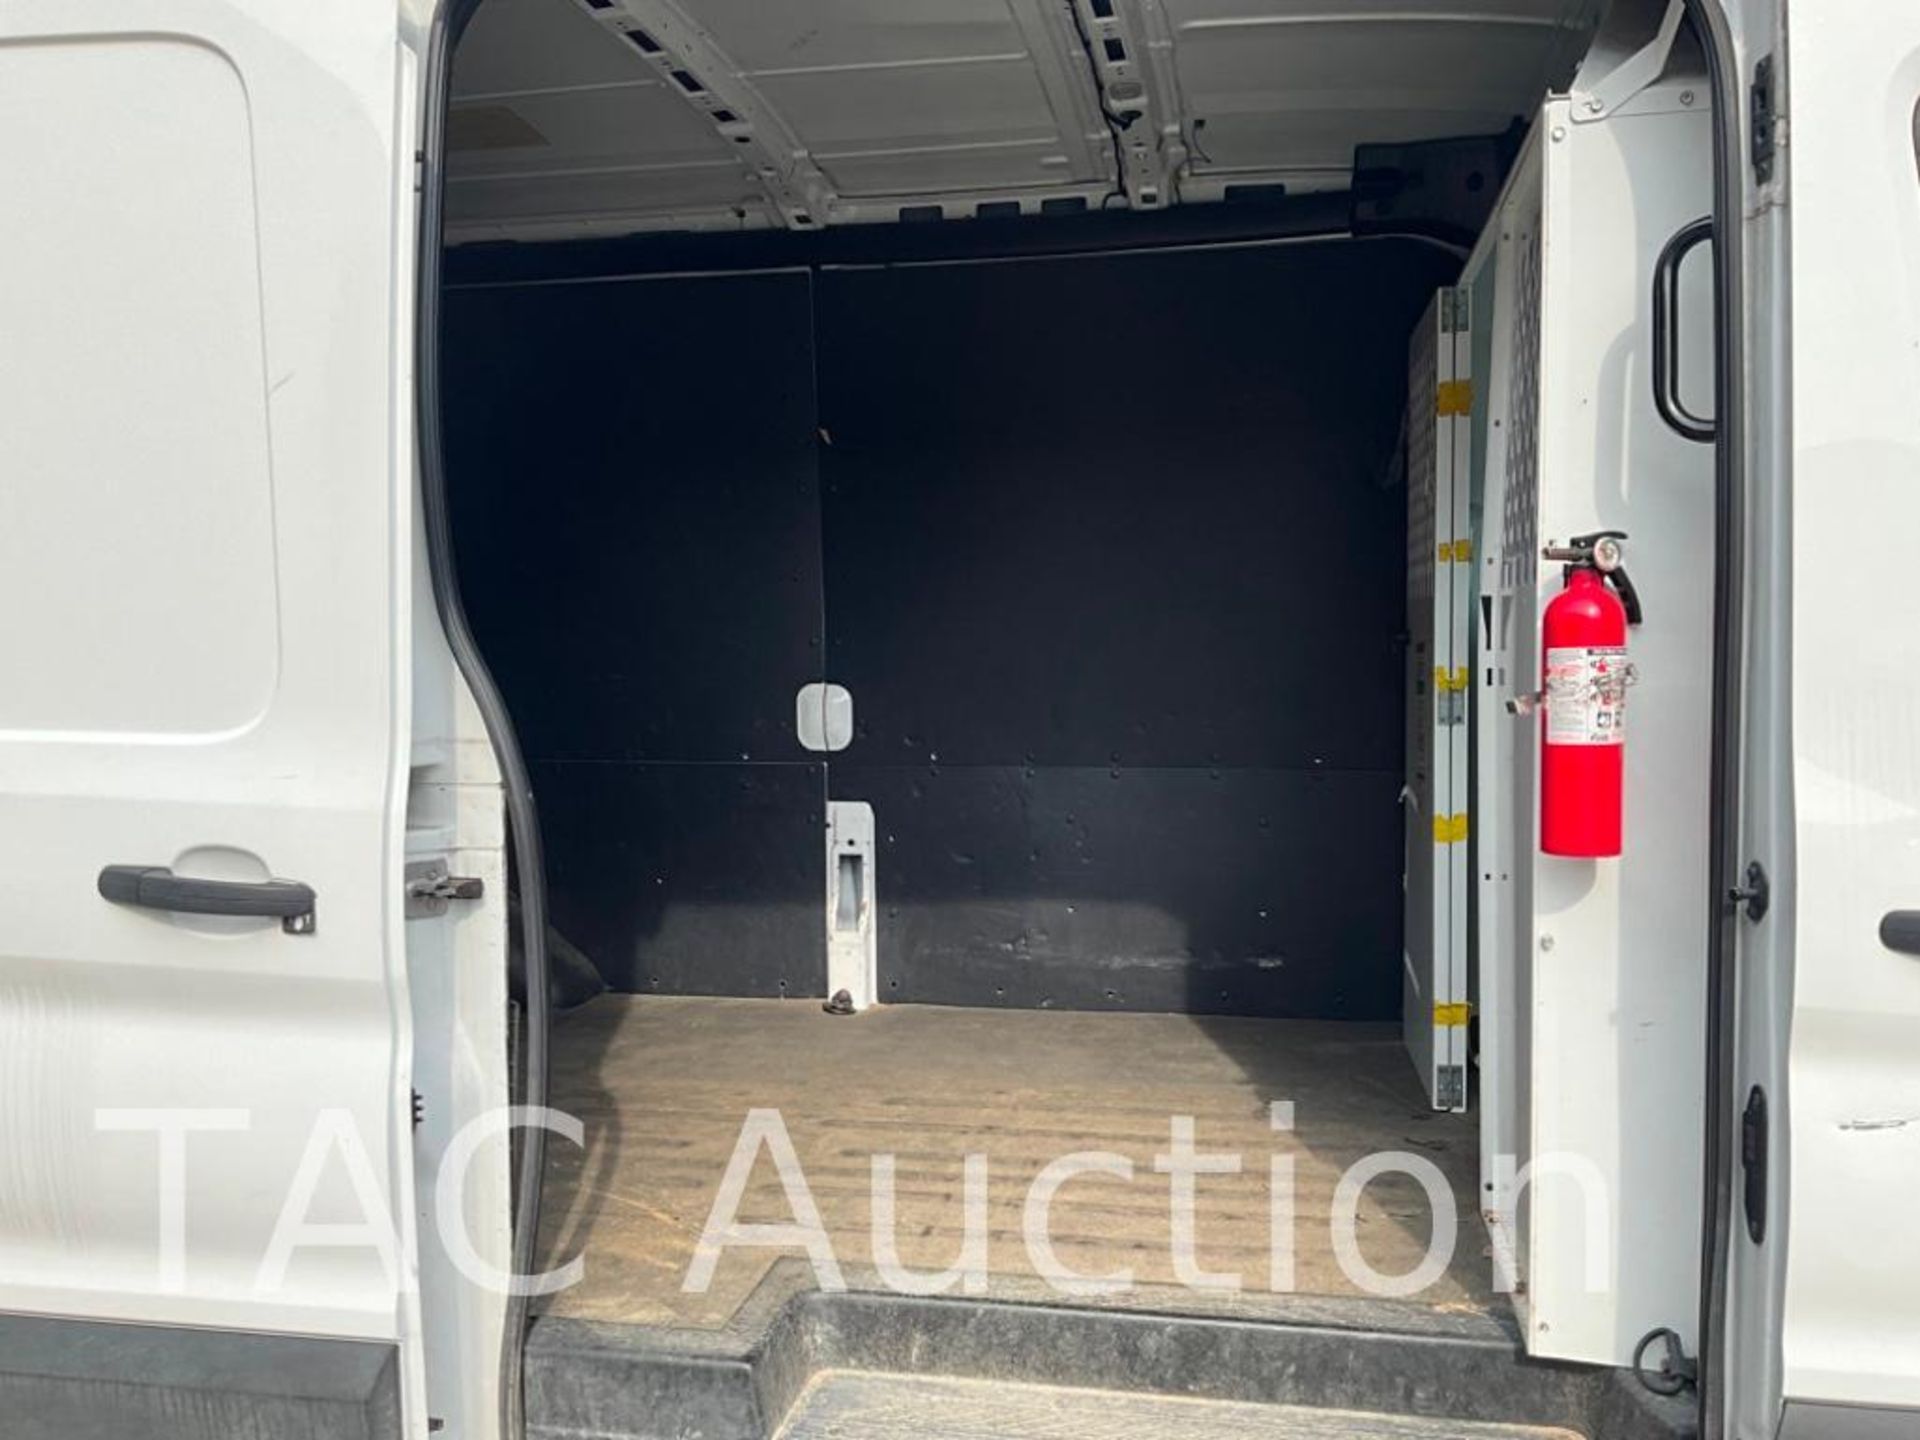 2019 Ford Transit 150 Cargo Van - Image 33 of 44